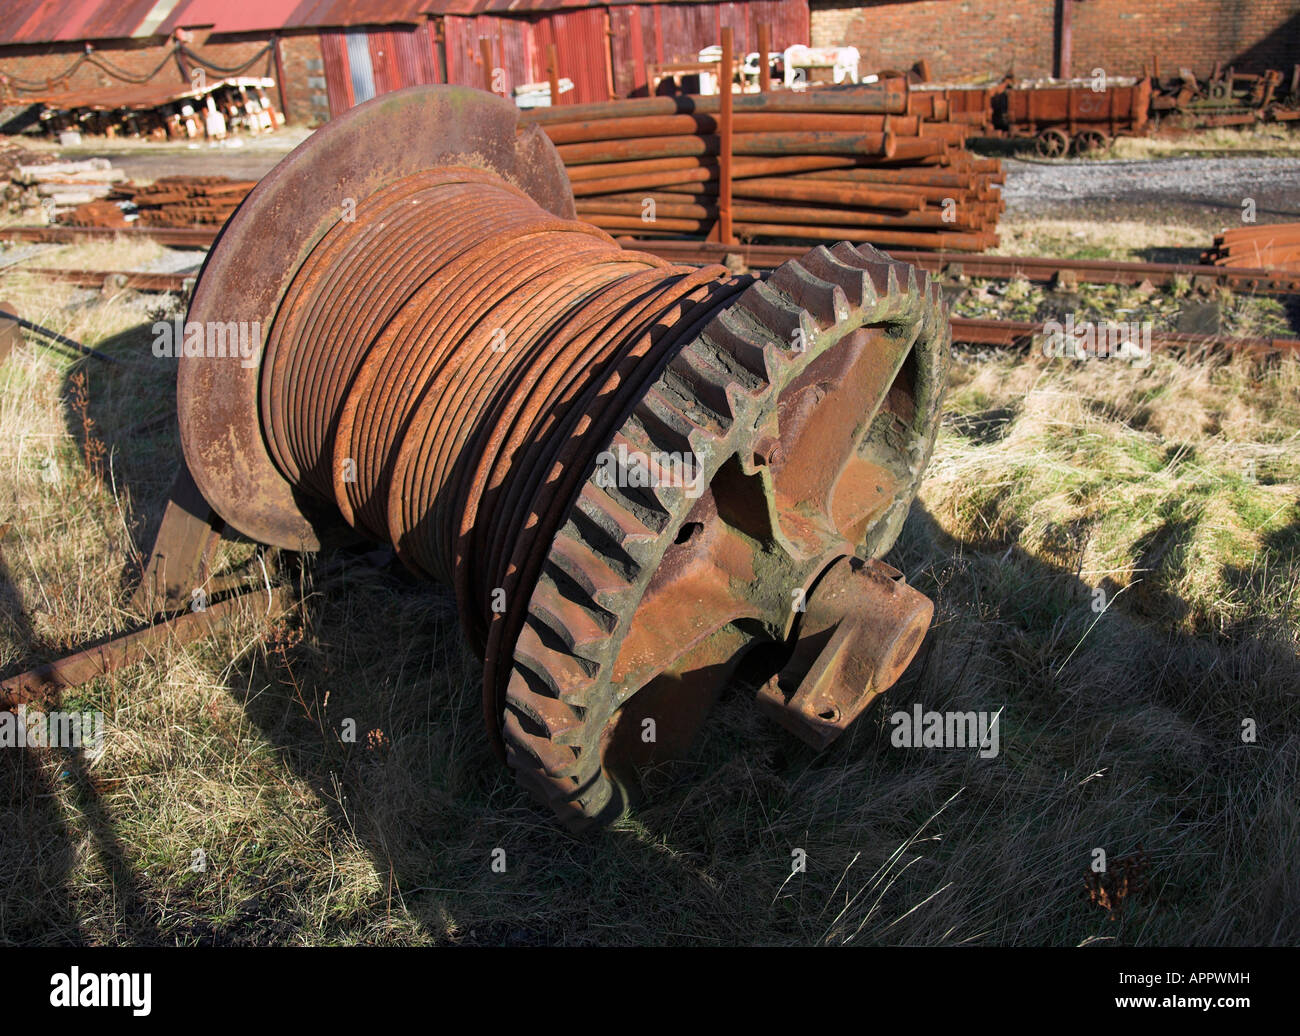 Rusty abandonnés à l'engrenage de treuillage Big Pit national coal museum situé dans la région de Samatan au Pays de Galles. Banque D'Images